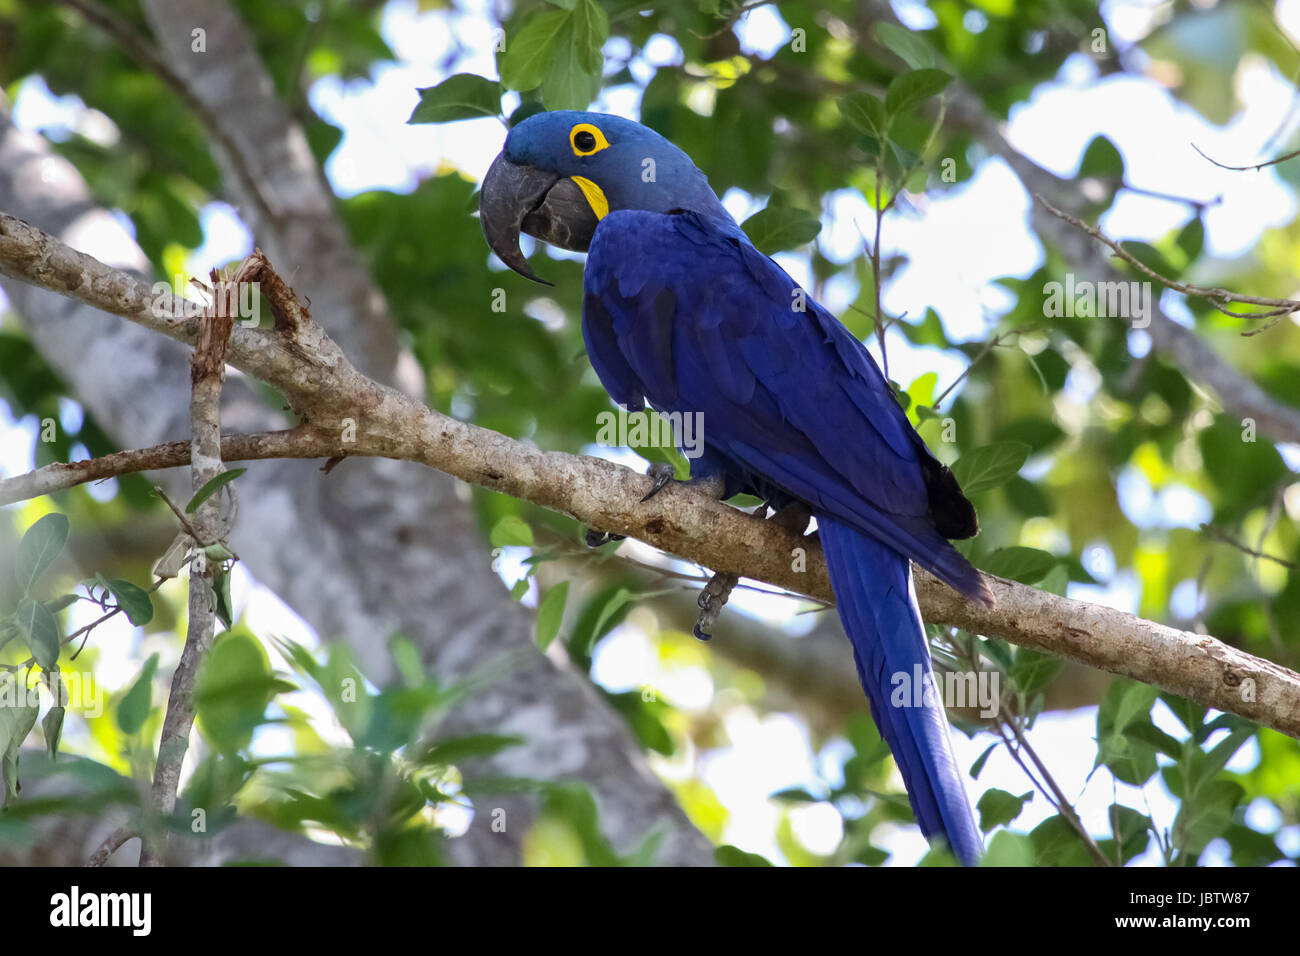 Hyacinth macaw assis sur une branche, Pantanal, Brésil Banque D'Images